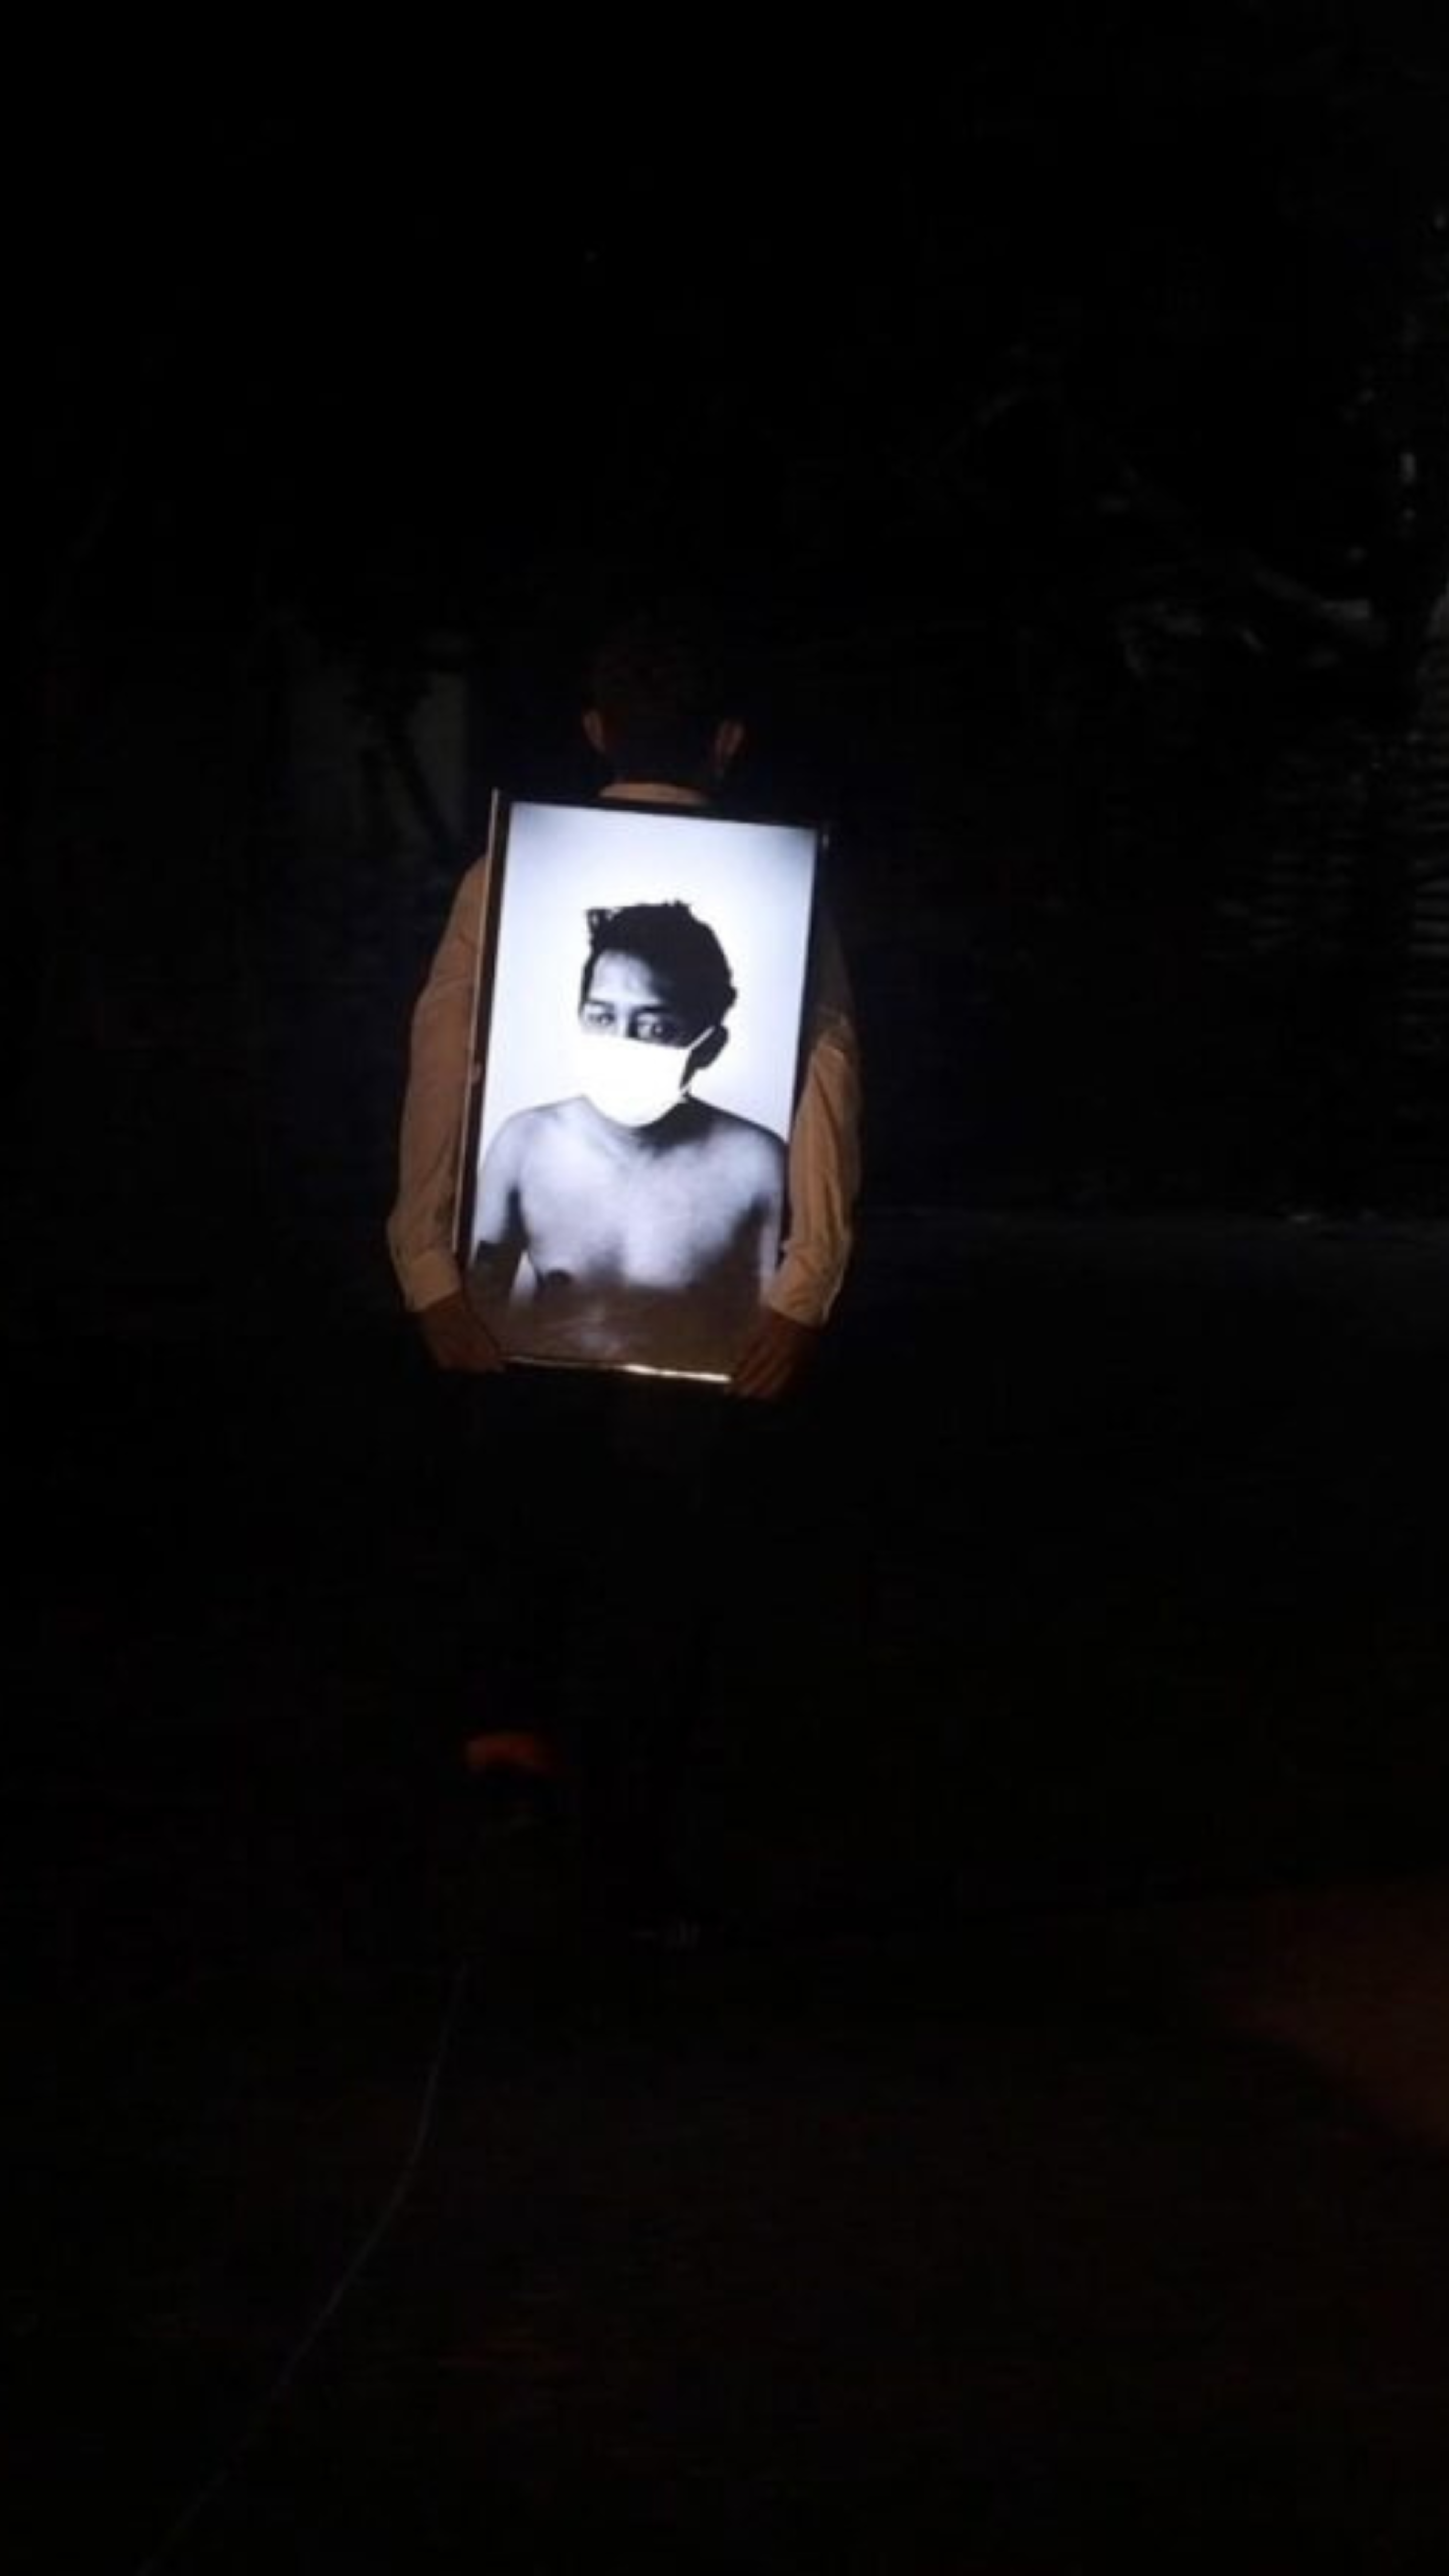 Une personne tenant un portrait encadré rétroéclairé dans l'obscurité.